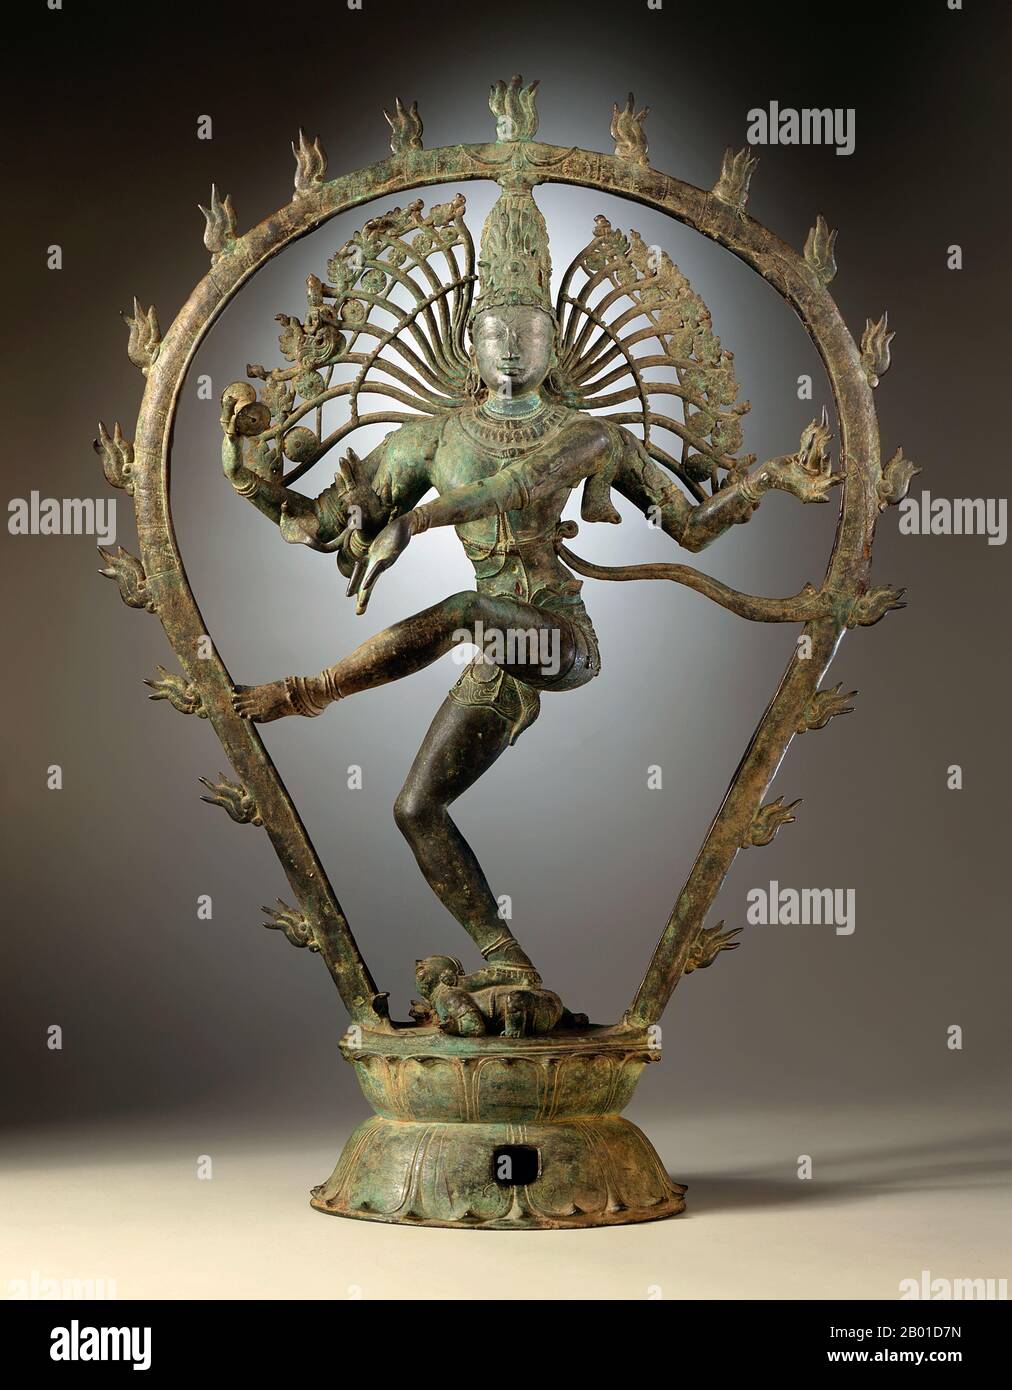 India: Shiva Nataraja o 'Dancing Shiva'. Estatuilla de aleación de cobre de Tamil Nadu, Dinastía Chola, c. 950-1000 CE. Nataraja o Nataraj ('El Señor (o Rey) de la Danza'; Tamil: Koothan) es una representación del dios hindú Shiva como el bailarín cósmico Koothan que realiza su danza divina para destruir un universo cansado y hacer preparativos para que el dios Brahma comience el proceso de creación. Un concepto tamil, Shiva fue representado por primera vez como Nataraja en los famosos bronces de Chola y esculturas de Chidambaram. Foto de stock